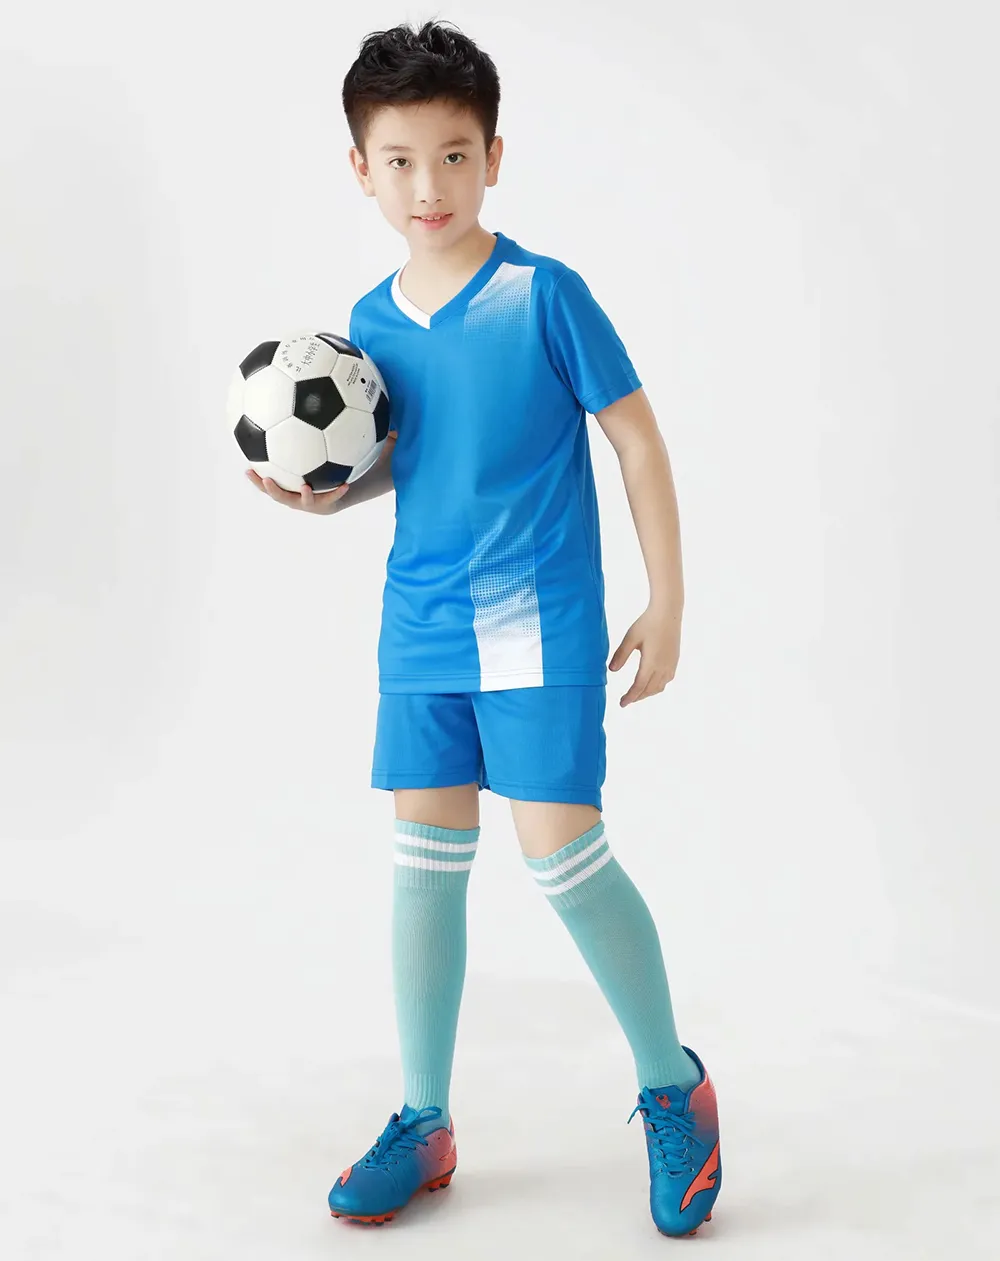 Jessie_kicks #G461 LJR aiir joordan 5 Design 2021 Fashion Jerseys Детская одежда Ourtdoor Sport